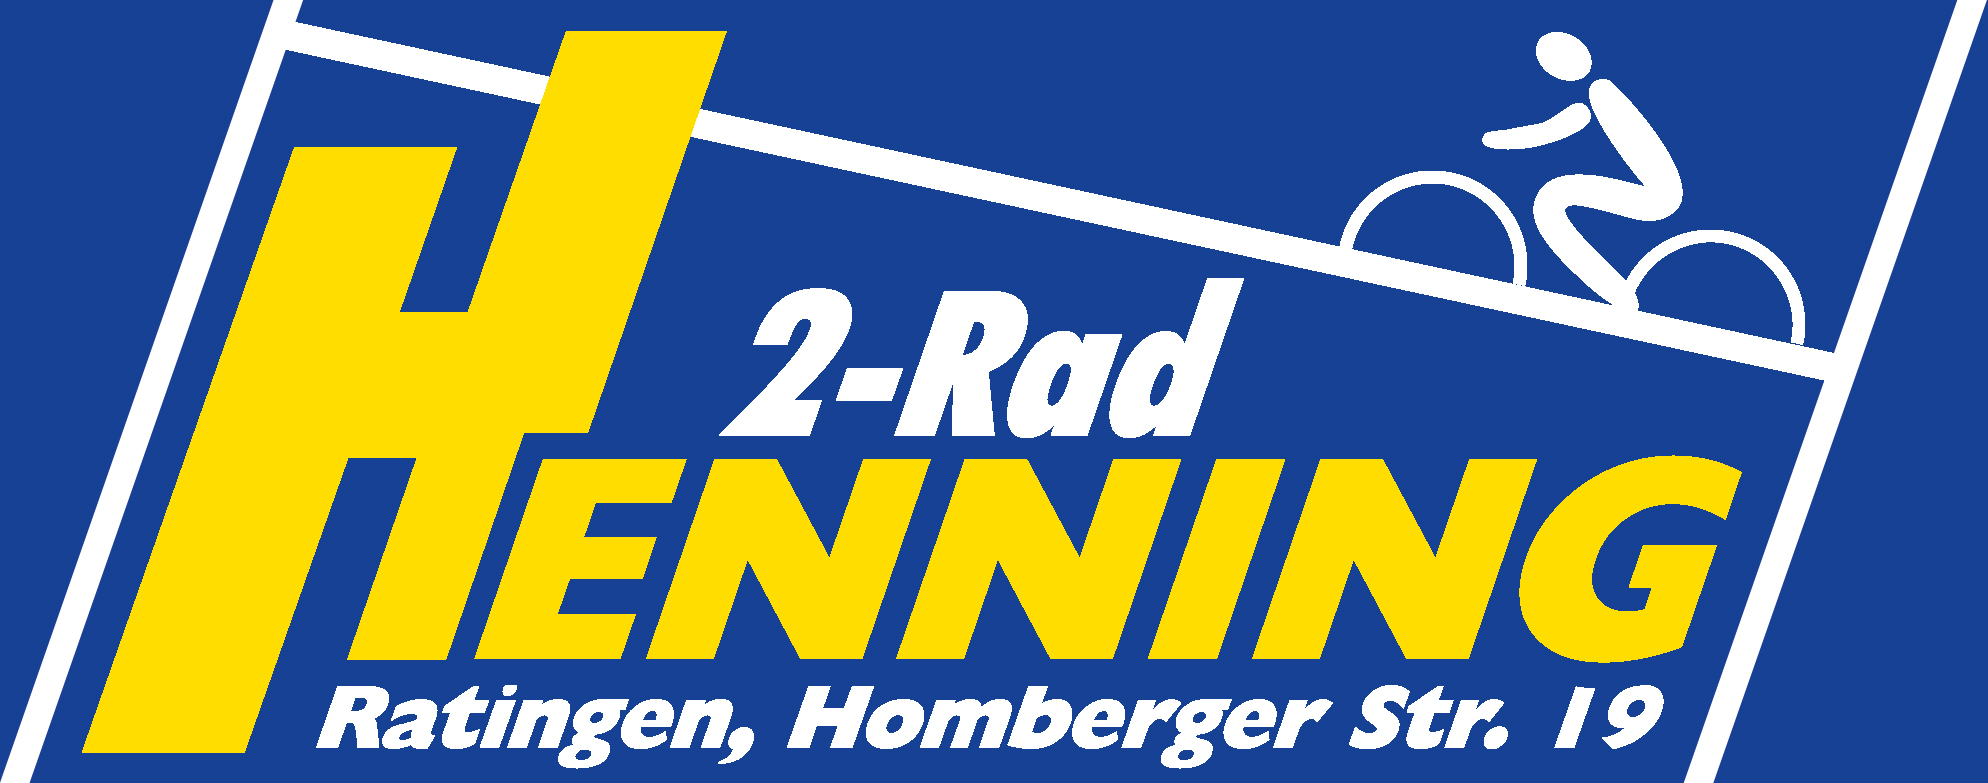 2-Rad Henning - Fachgeschäft für Fahrräder